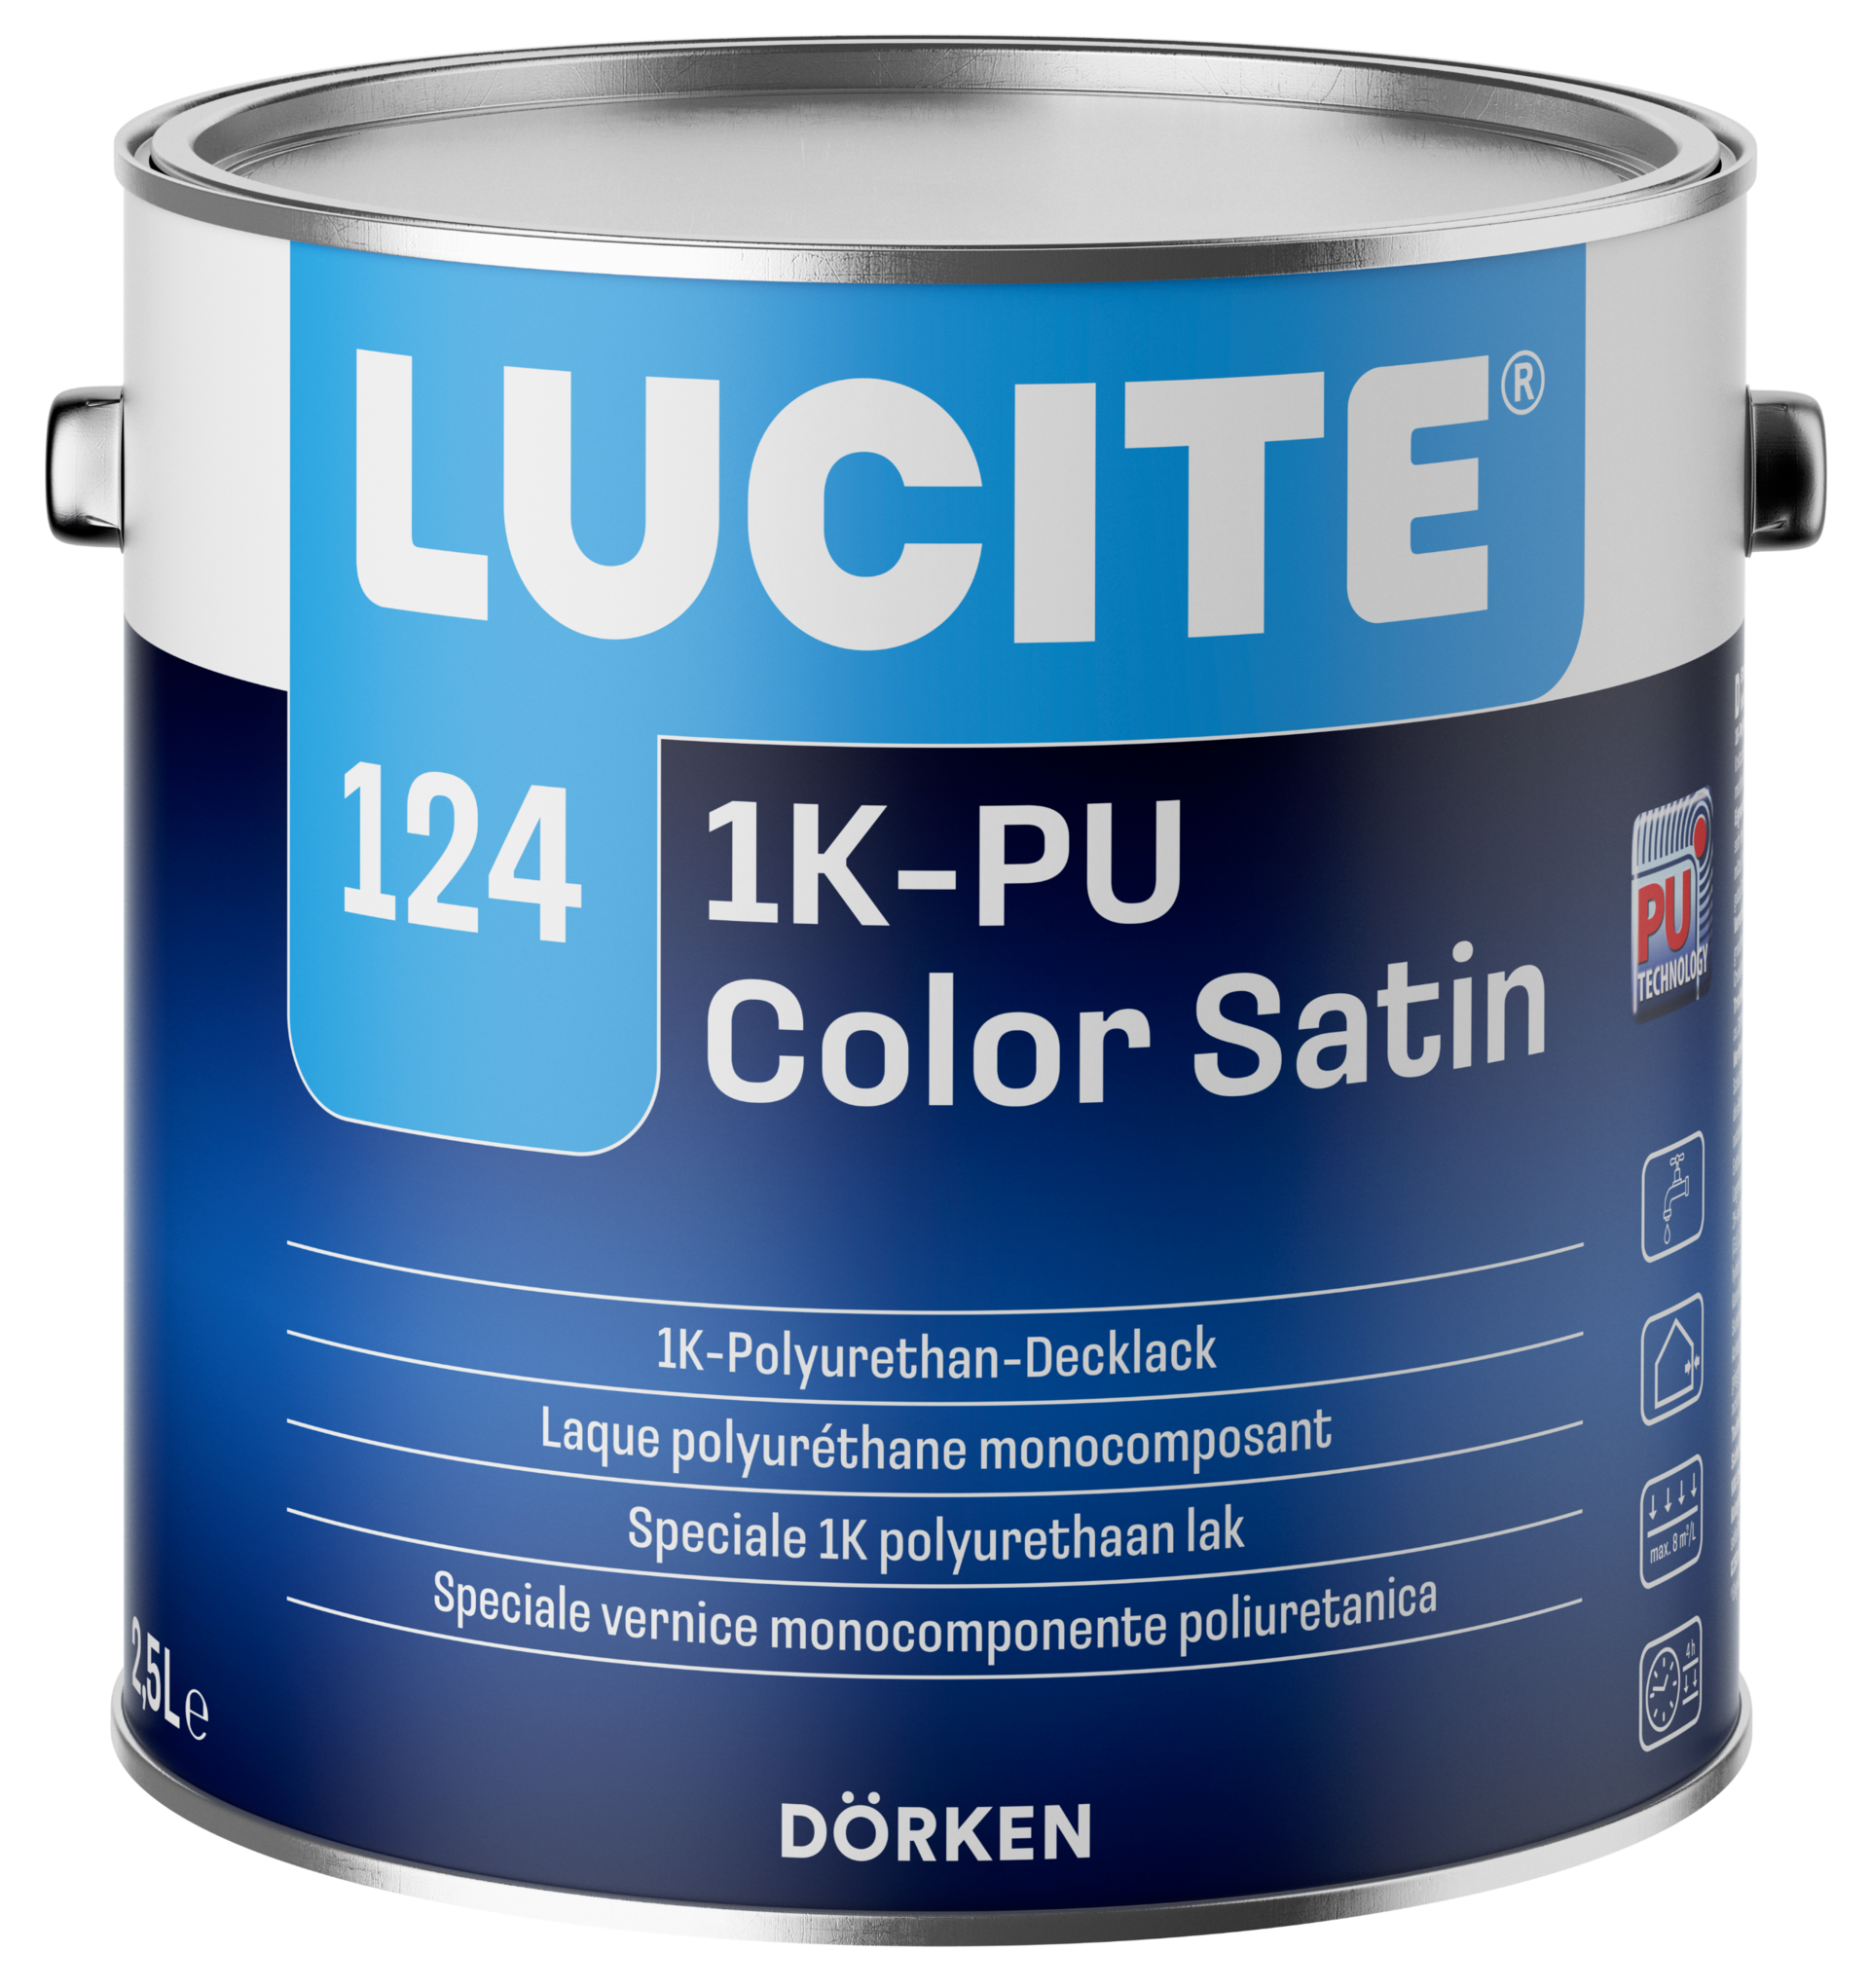 LUCITE® 124 1K-PU Color Satin